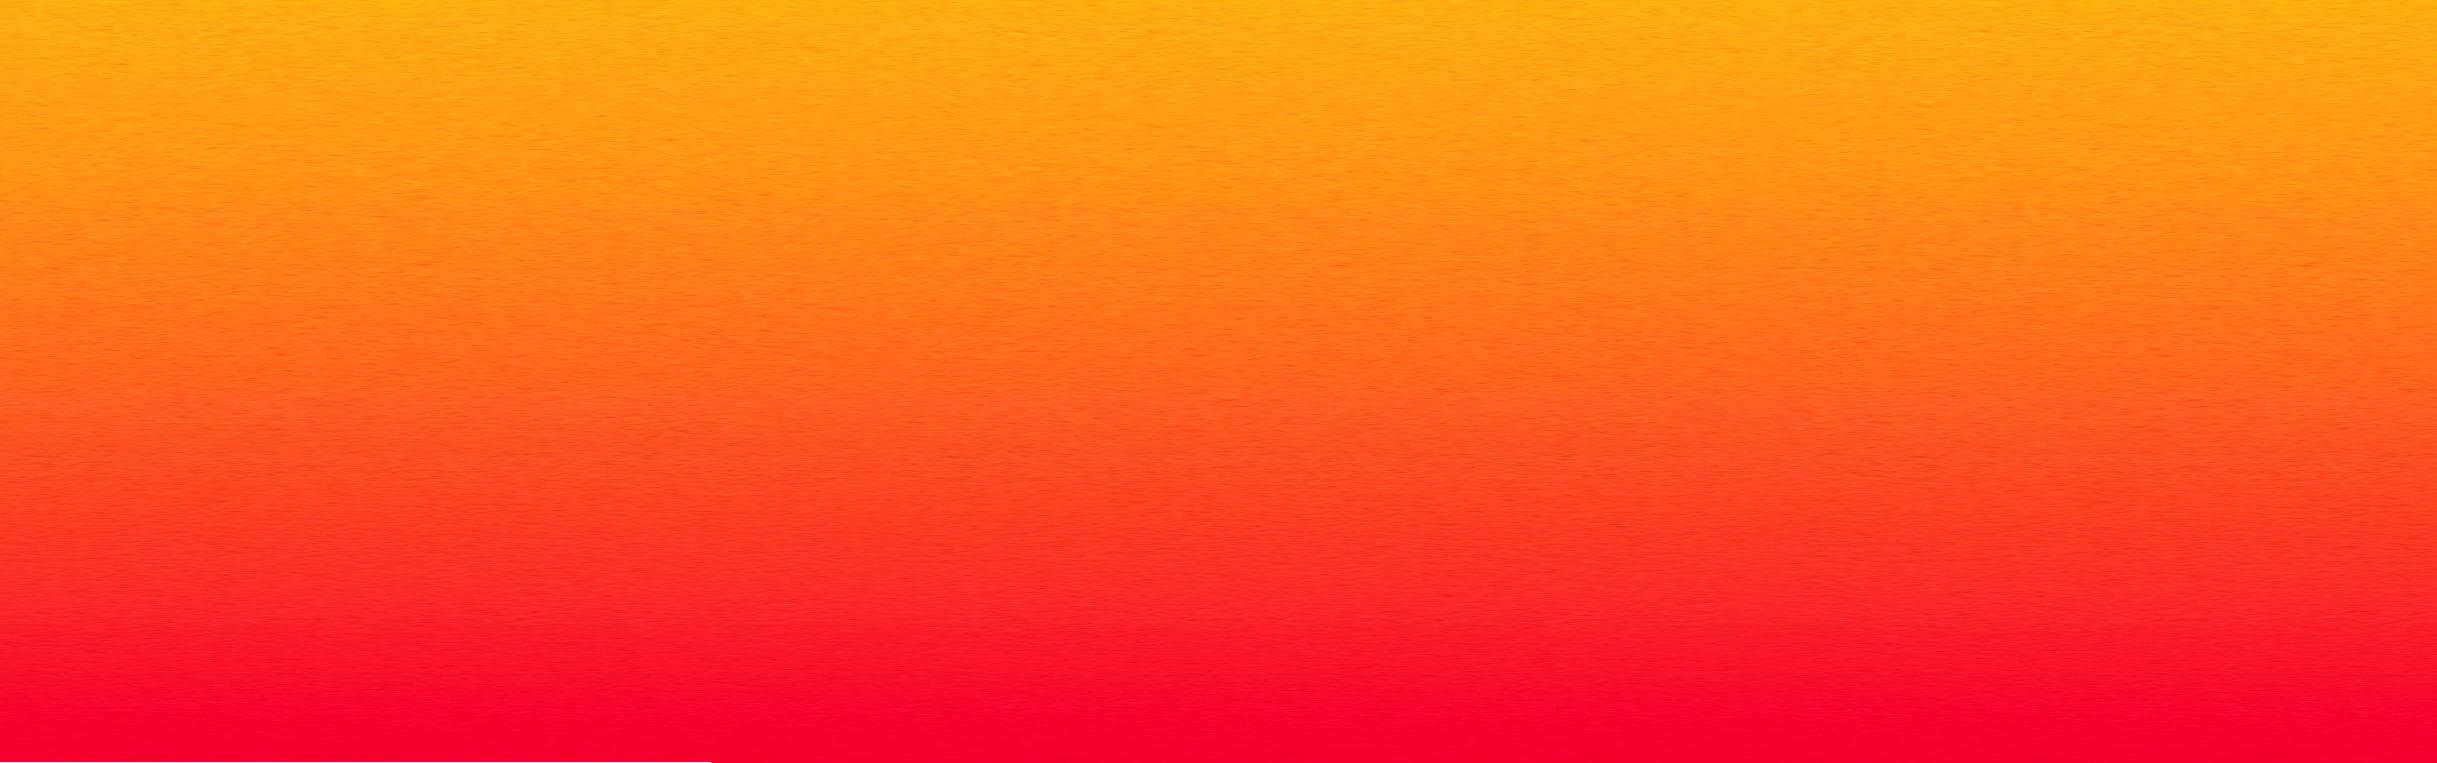 Hình nền màu cam đậm, hồng đỏ và cam gradient khiến cho mọi không gian trở nên đặc biệt và ấn tượng. Hãy chiêm ngưỡng các bức ảnh với màu sắc này để cảm nhận sự kết hợp tuyệt vời giữa các gam màu khác nhau.